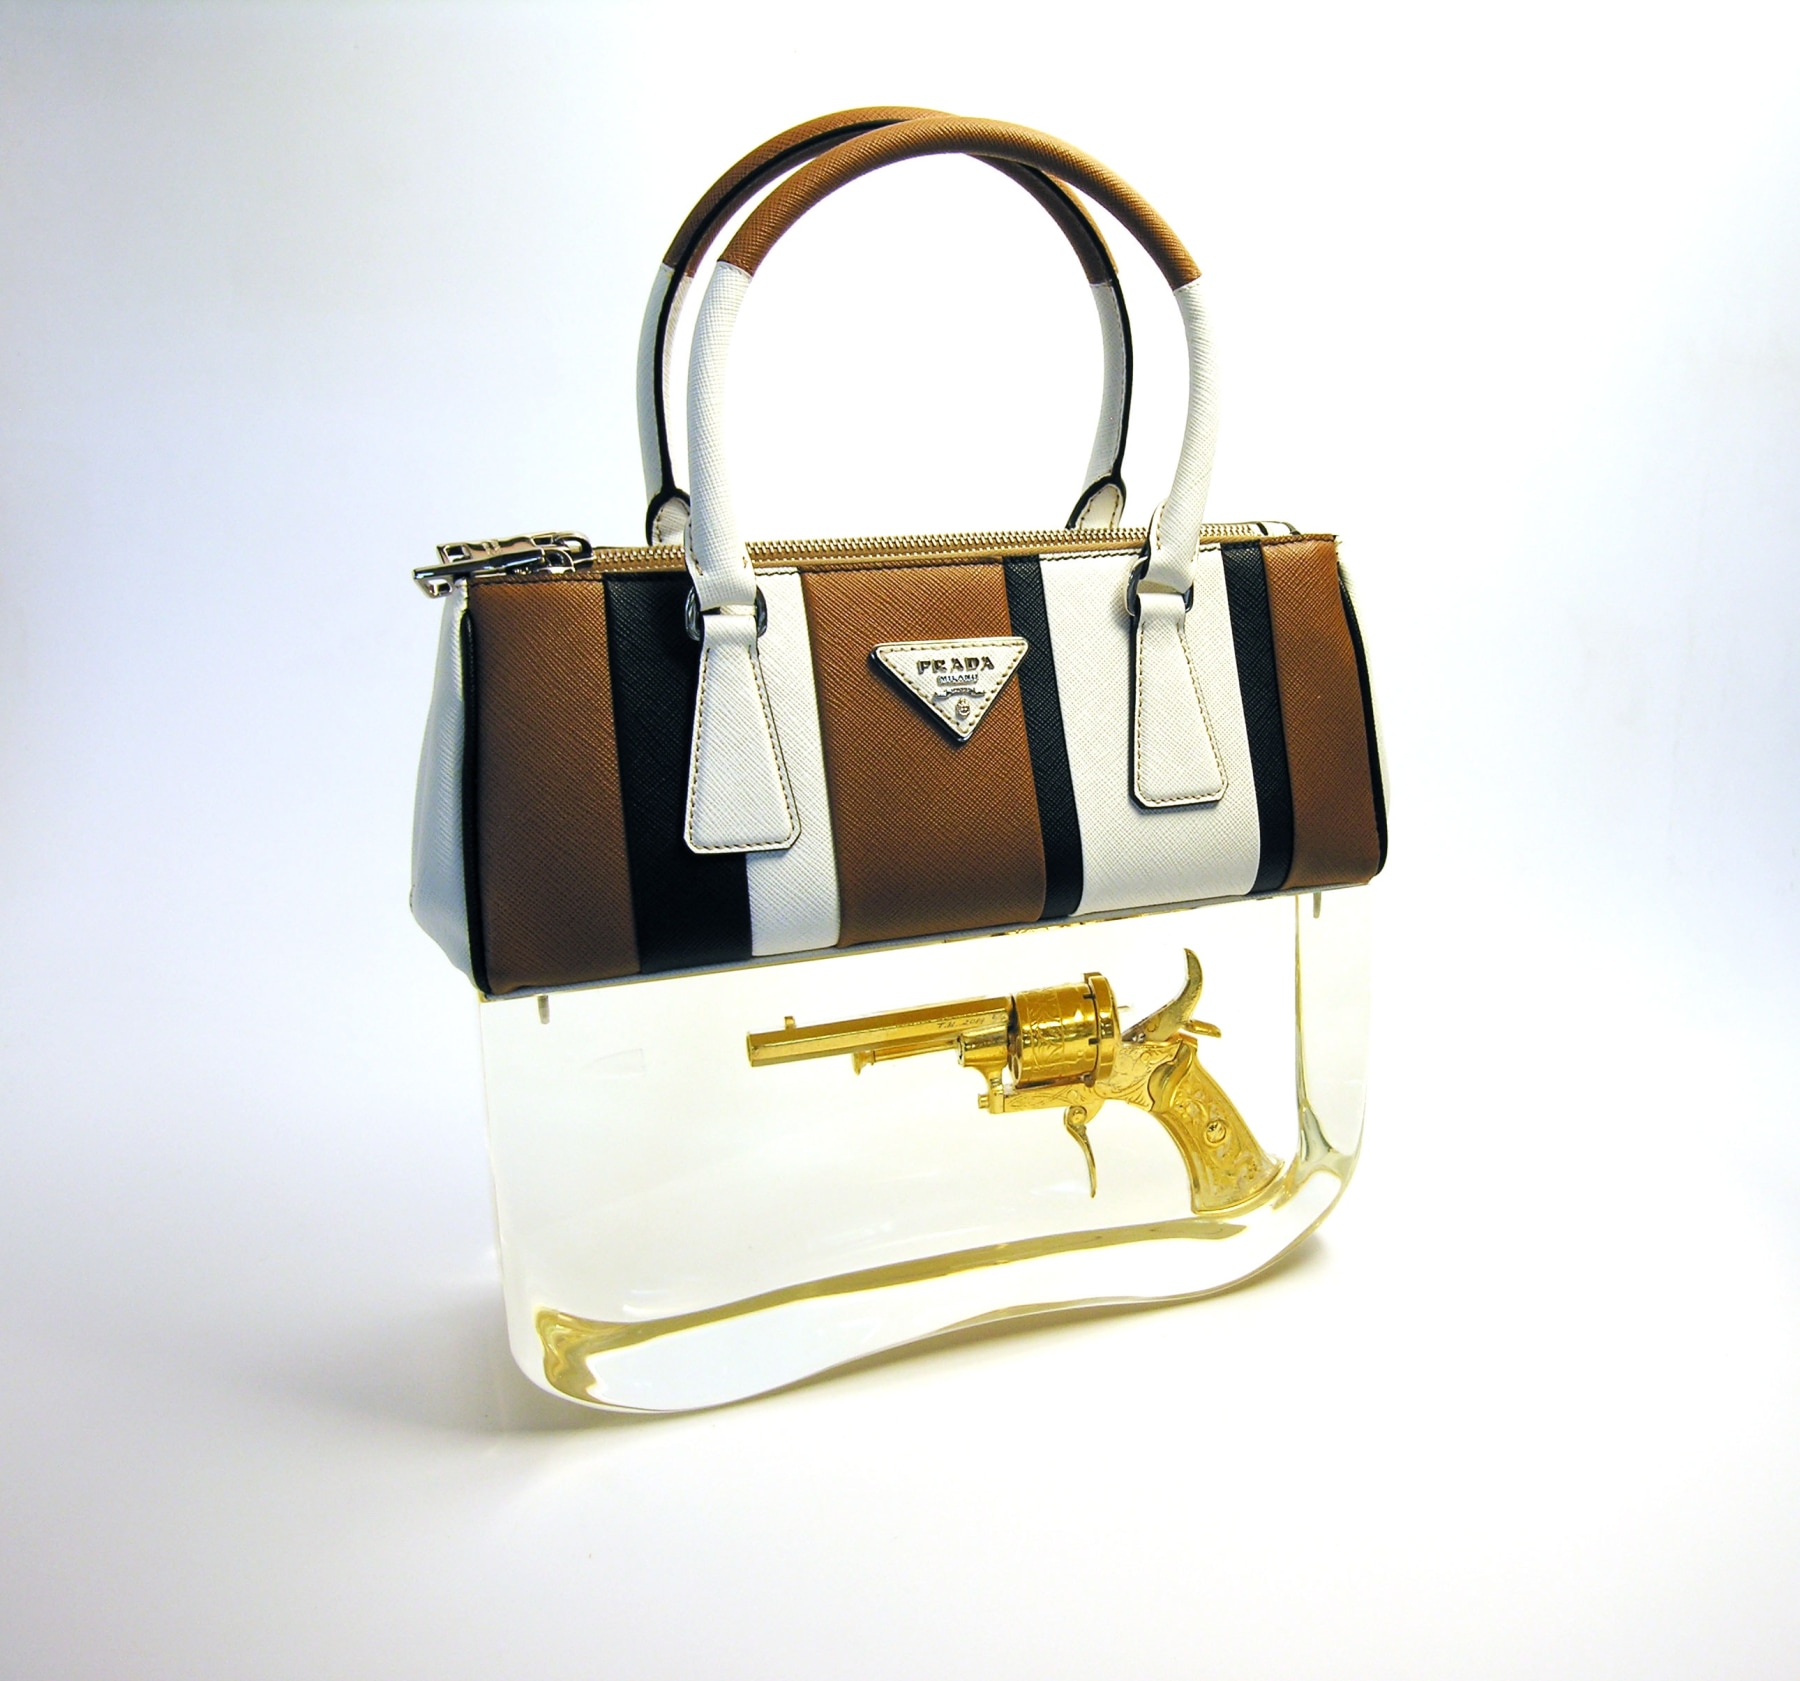 Ted Noten, Dutch Design, acrylic handbag, Prada, golden gun